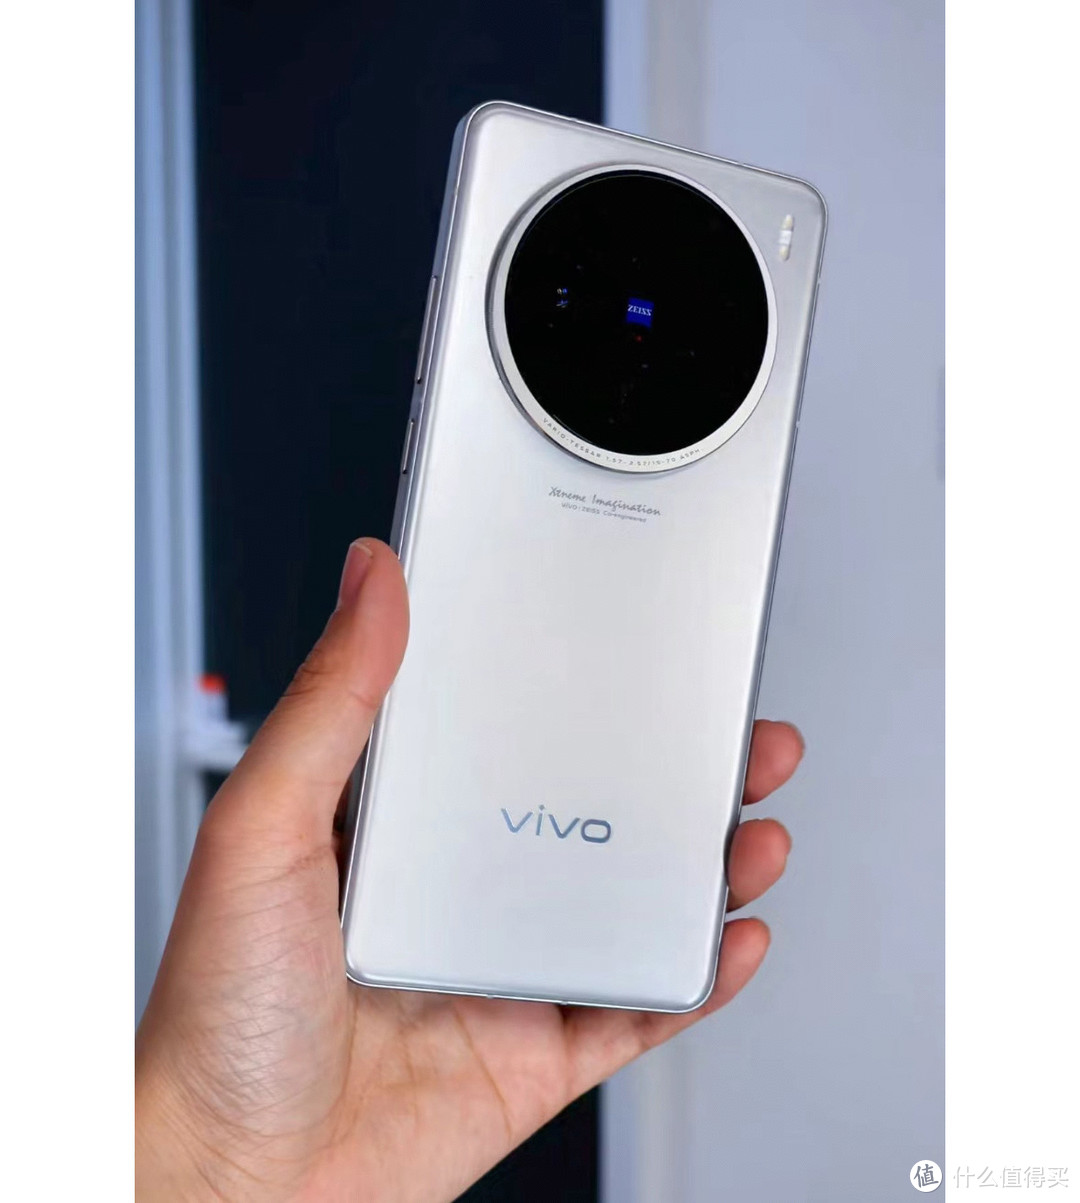 Vivox100旗舰手机使用评测